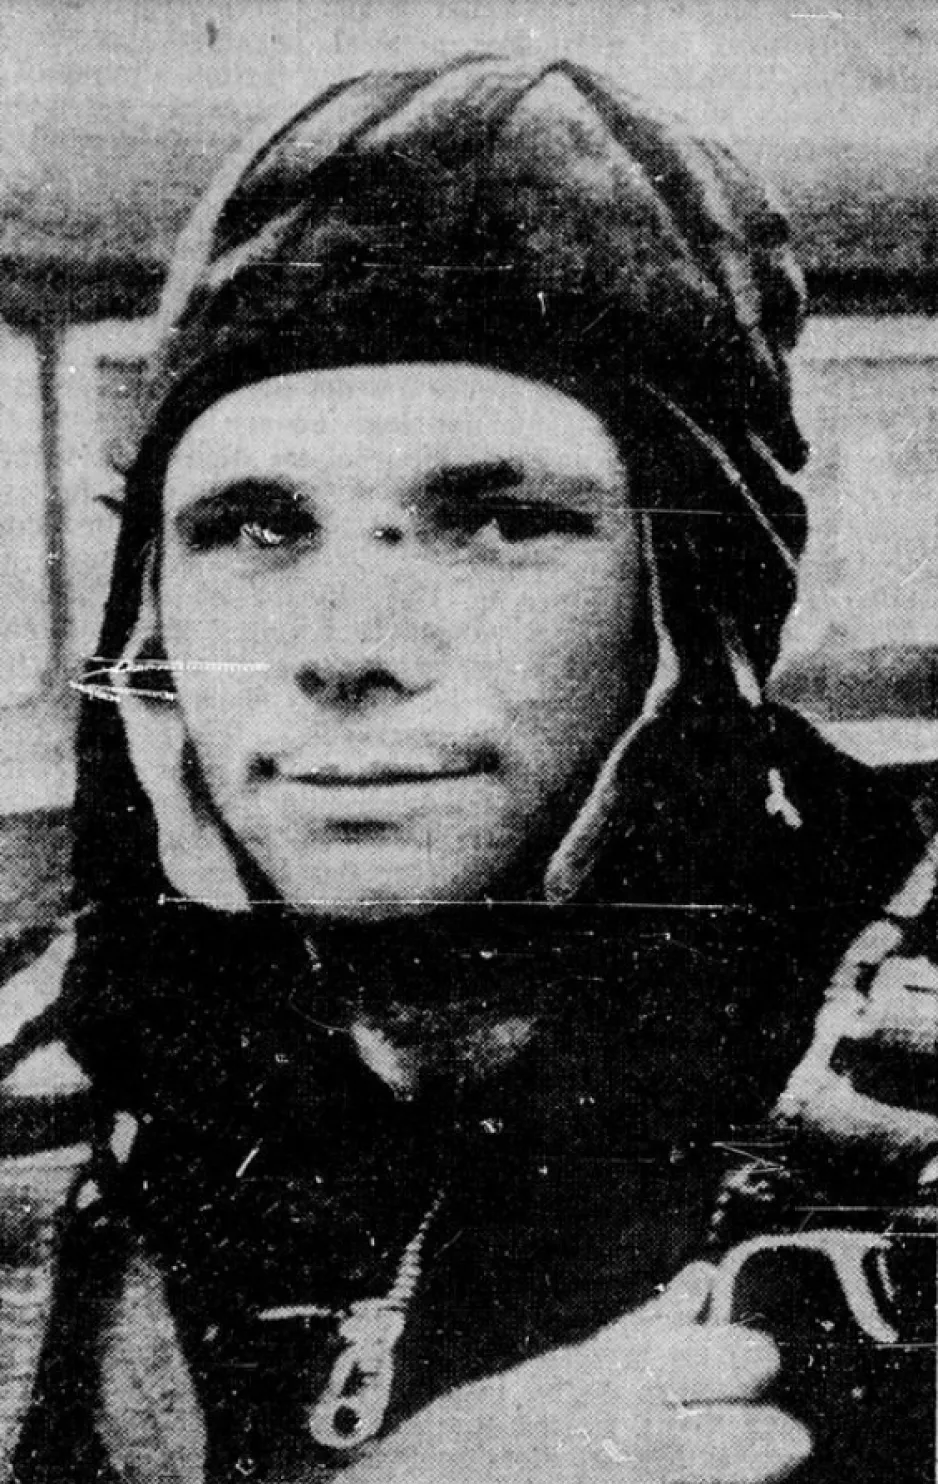 The photograph of Gagarin published in April 1961 by many Western dailies. Anon., “Un Russe ramené vivant d’un voyage cosmique.” La Presse, 12 April 1961, last edition, 1.